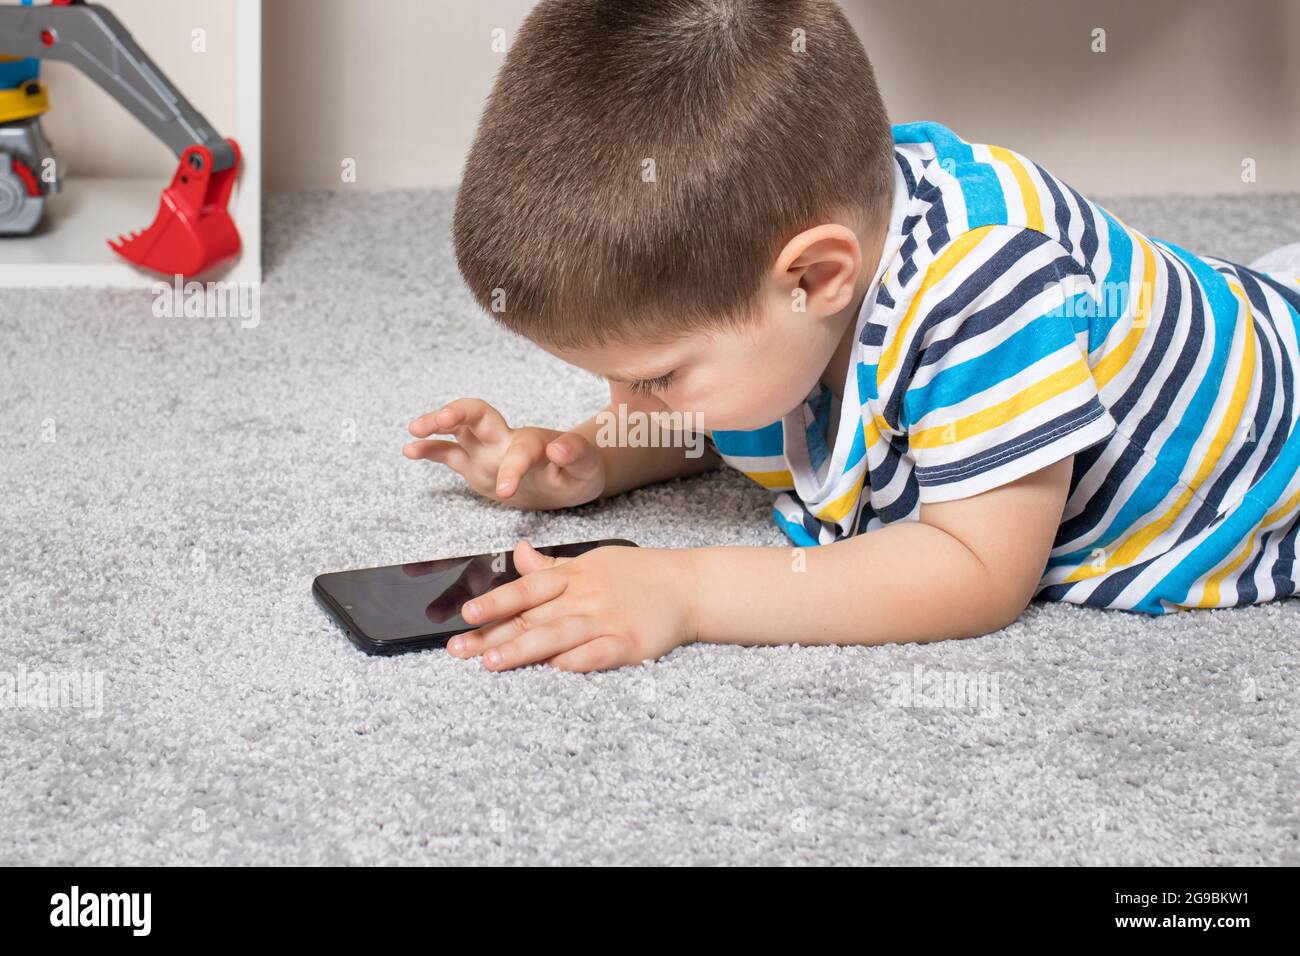 Un petit garçon de 3-4 ans regarde l'écran du téléphone. Dessins